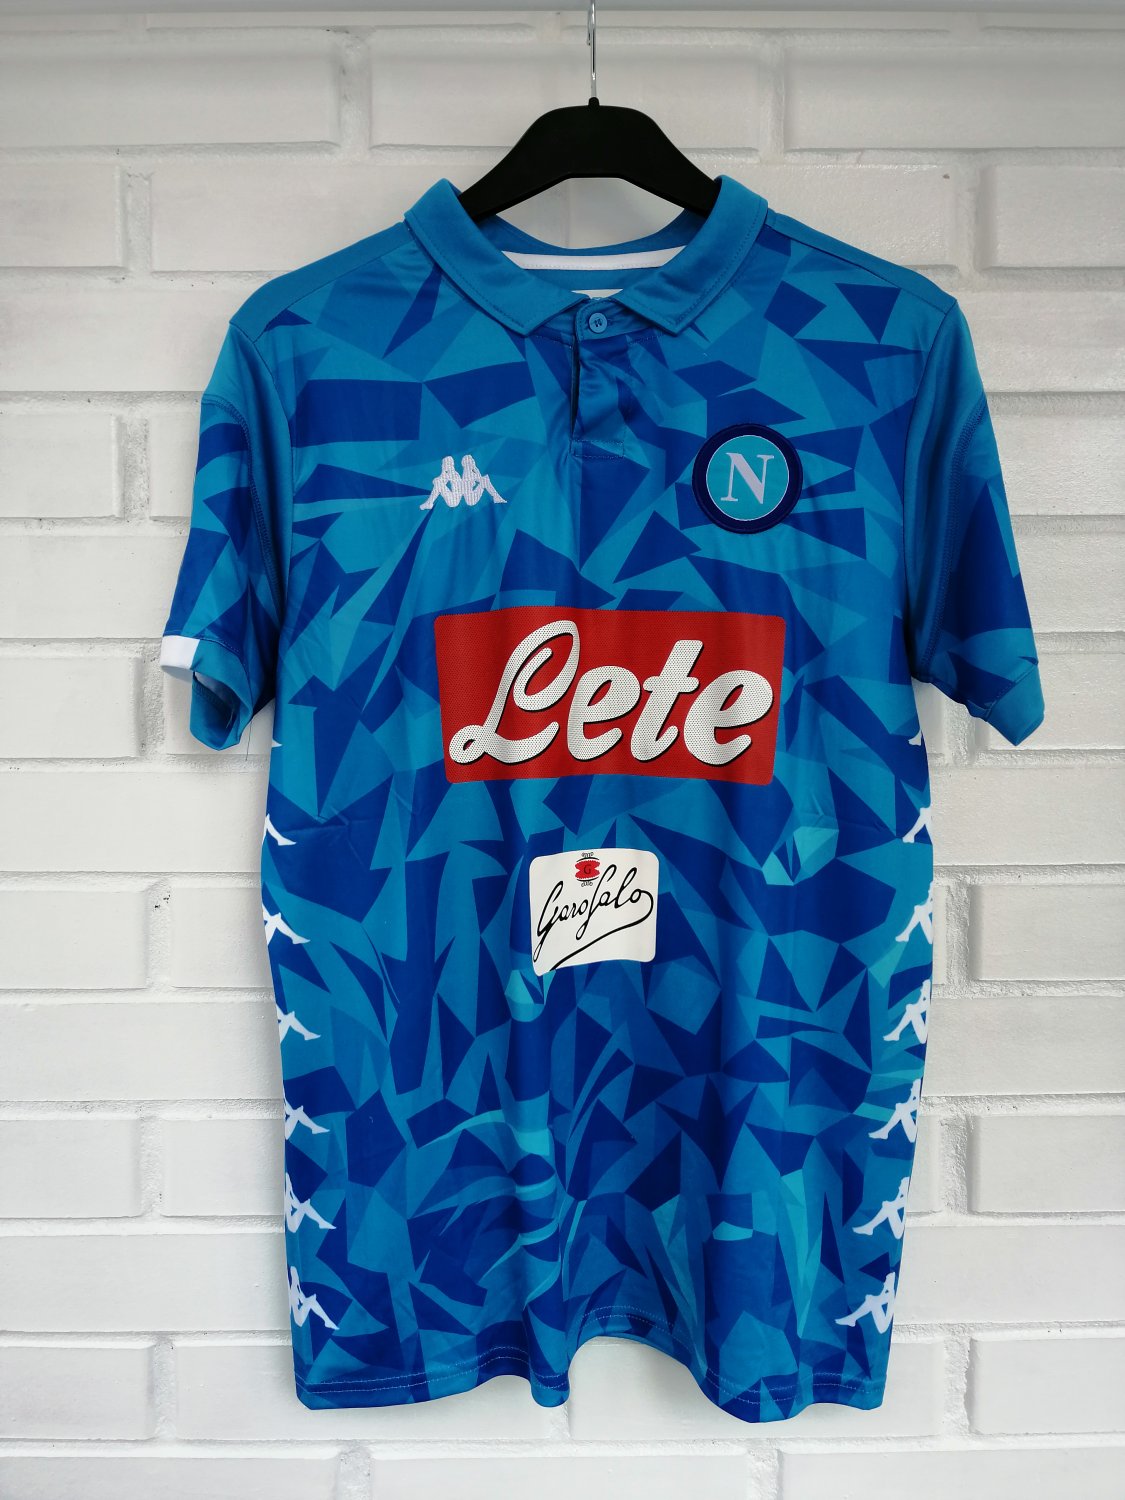 cap mental Afford Napoli Home maglia di calcio 2018 - 2019. Sponsored by Lete